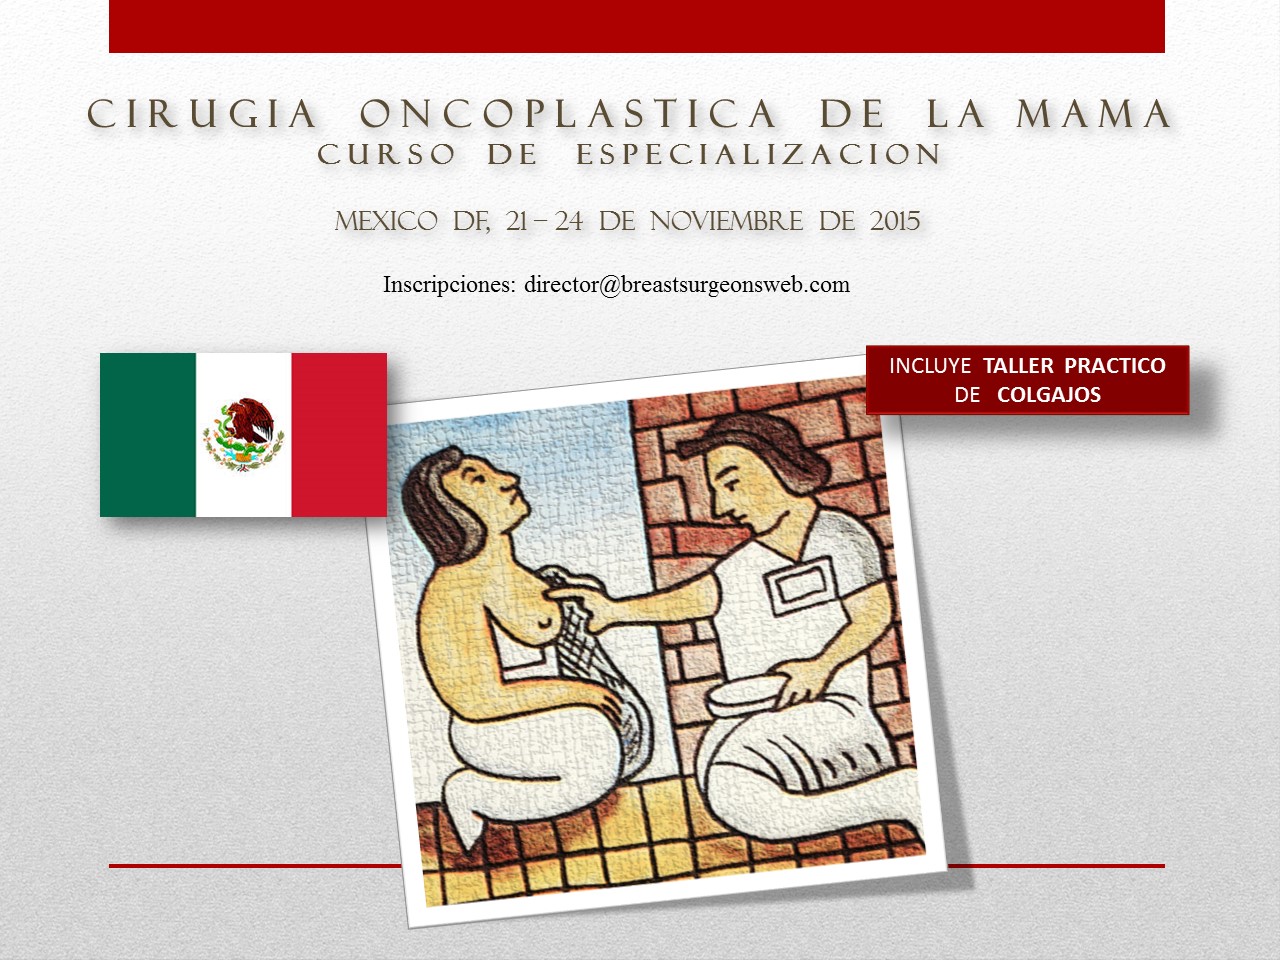 Mexico 2015 Programa